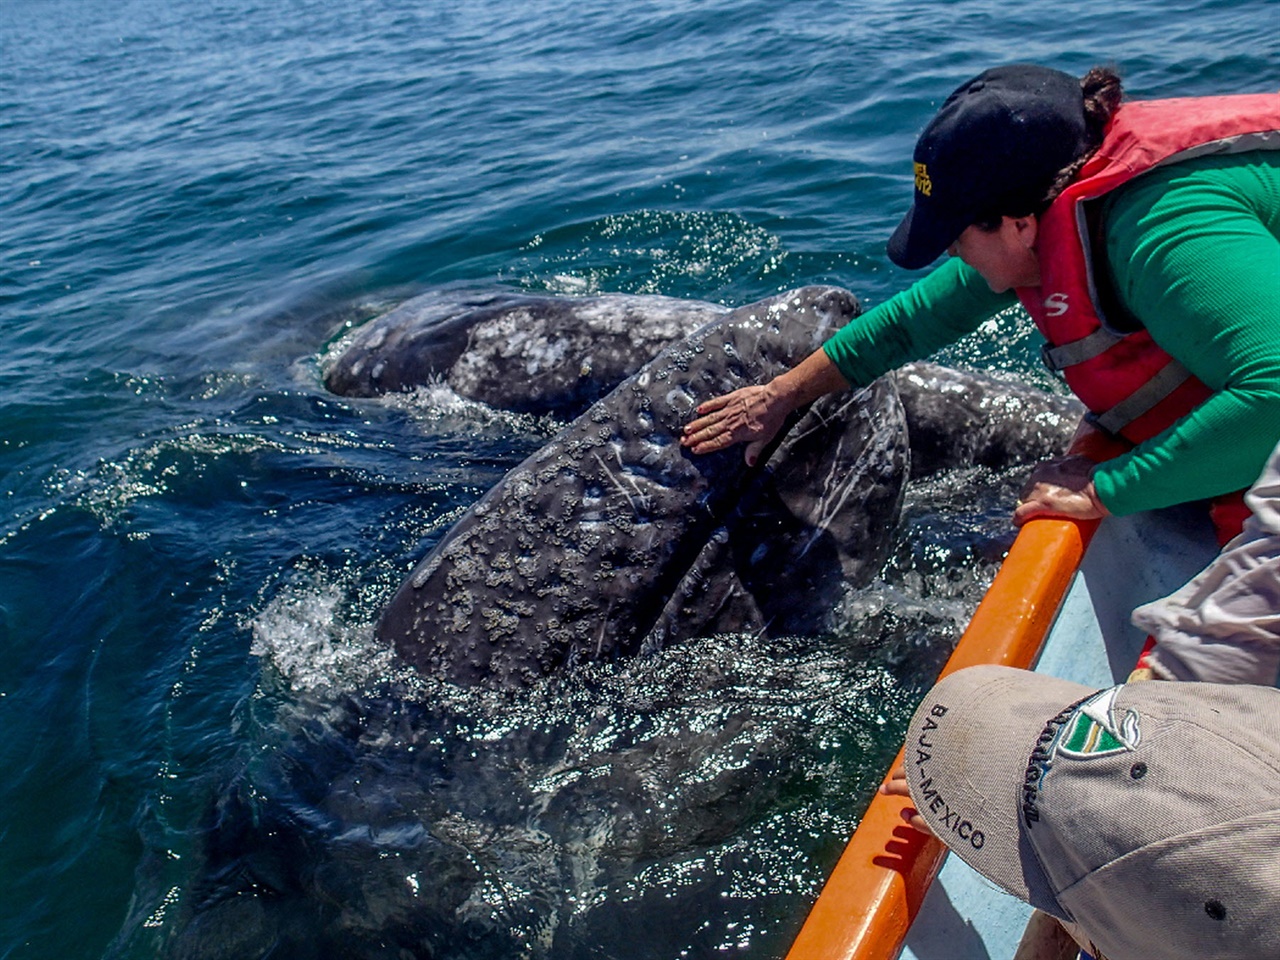 회색고래는 인간이 자신의 새끼를 만지는 것을 믿고 허락하는 그 크기의 유일한 야생 동물